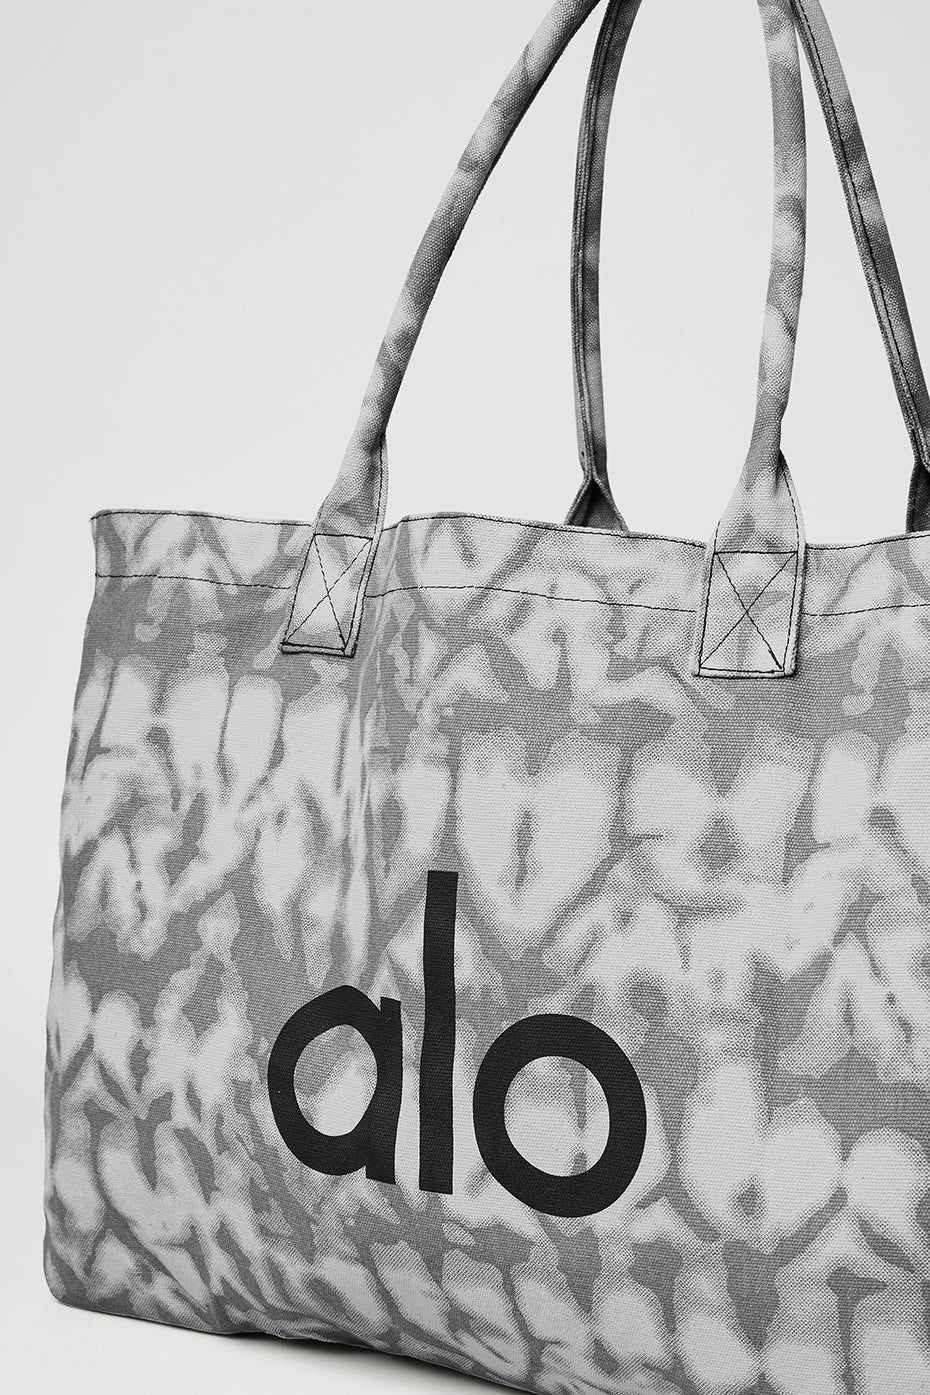 Alo Yoga Pride Collection 2021 Reusable Multi Grey Tiedye Shopper Tote Bag